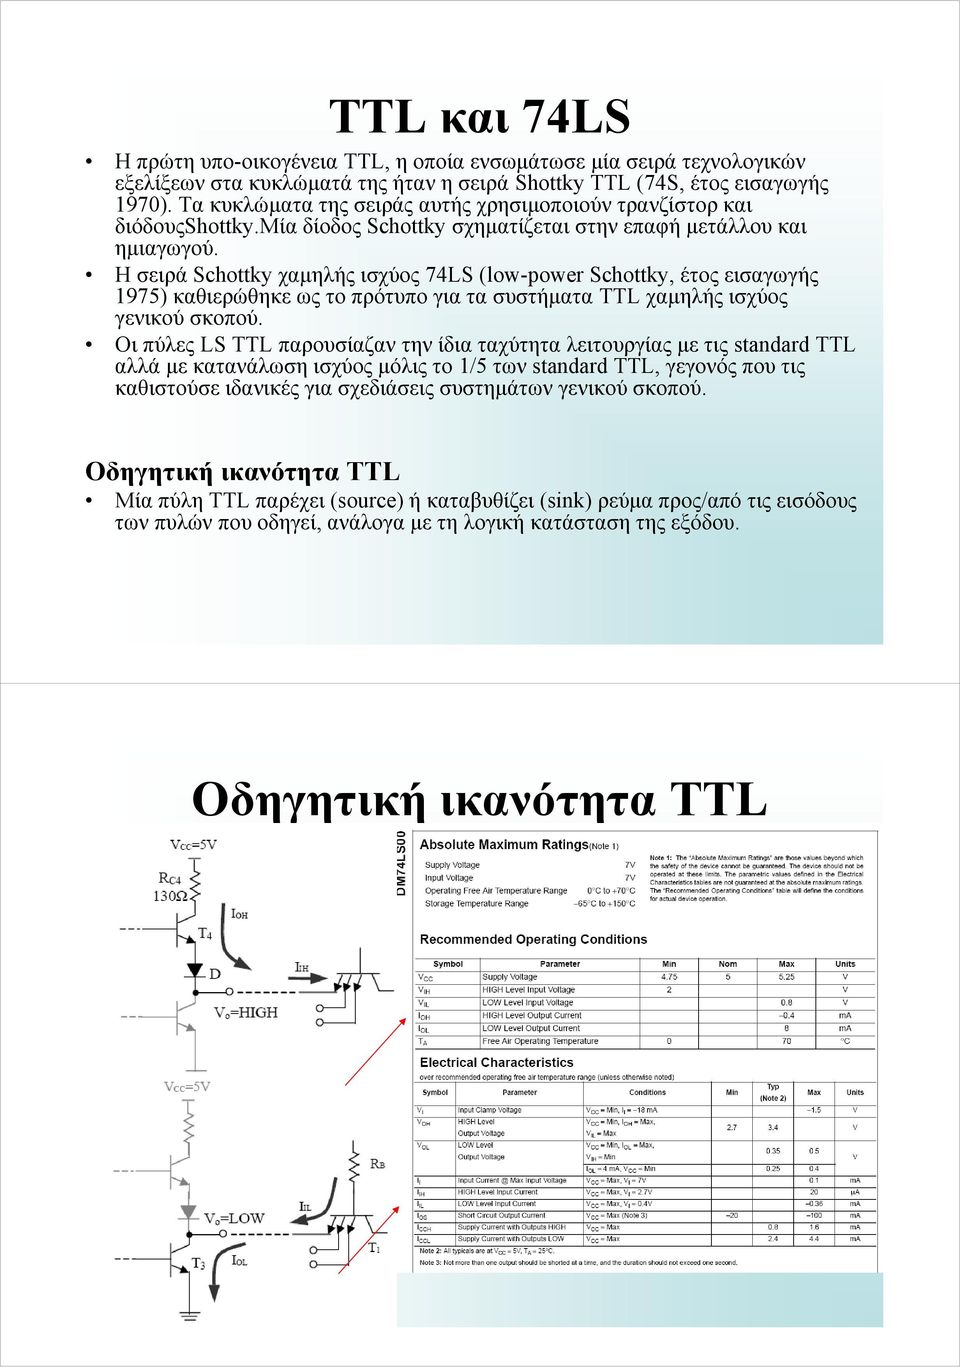 ΗσειράSchottky χαμηλής ισχύος 74LS (low-power Schottky, έτος εισαγωγής 1975) καθιερώθηκε ως το πρότυπο για τα συστήματα TTL χαμηλής ισχύος γενικού σκοπού.